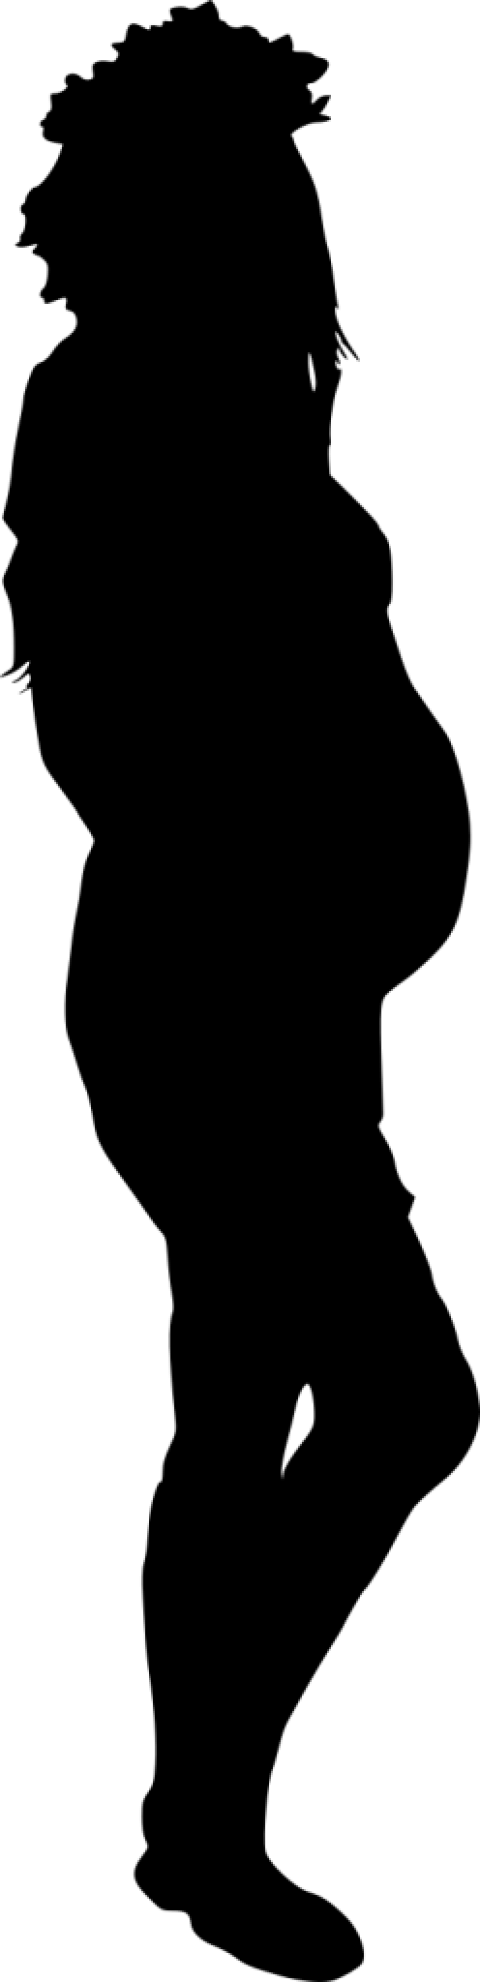 Pregnant Woman Silhouette - Pregnant Woman Silhouette (480x1982)